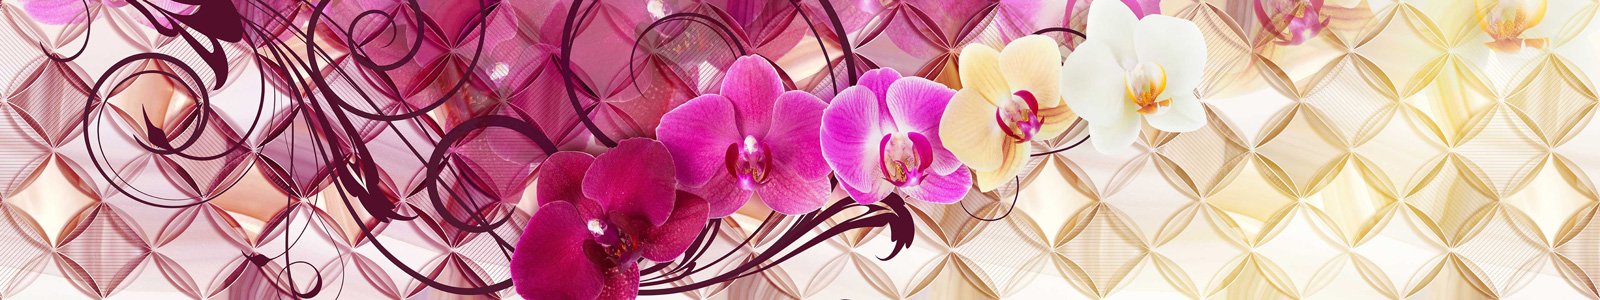 №7321 - Орхидеи разного цвета на абстрактном фоне